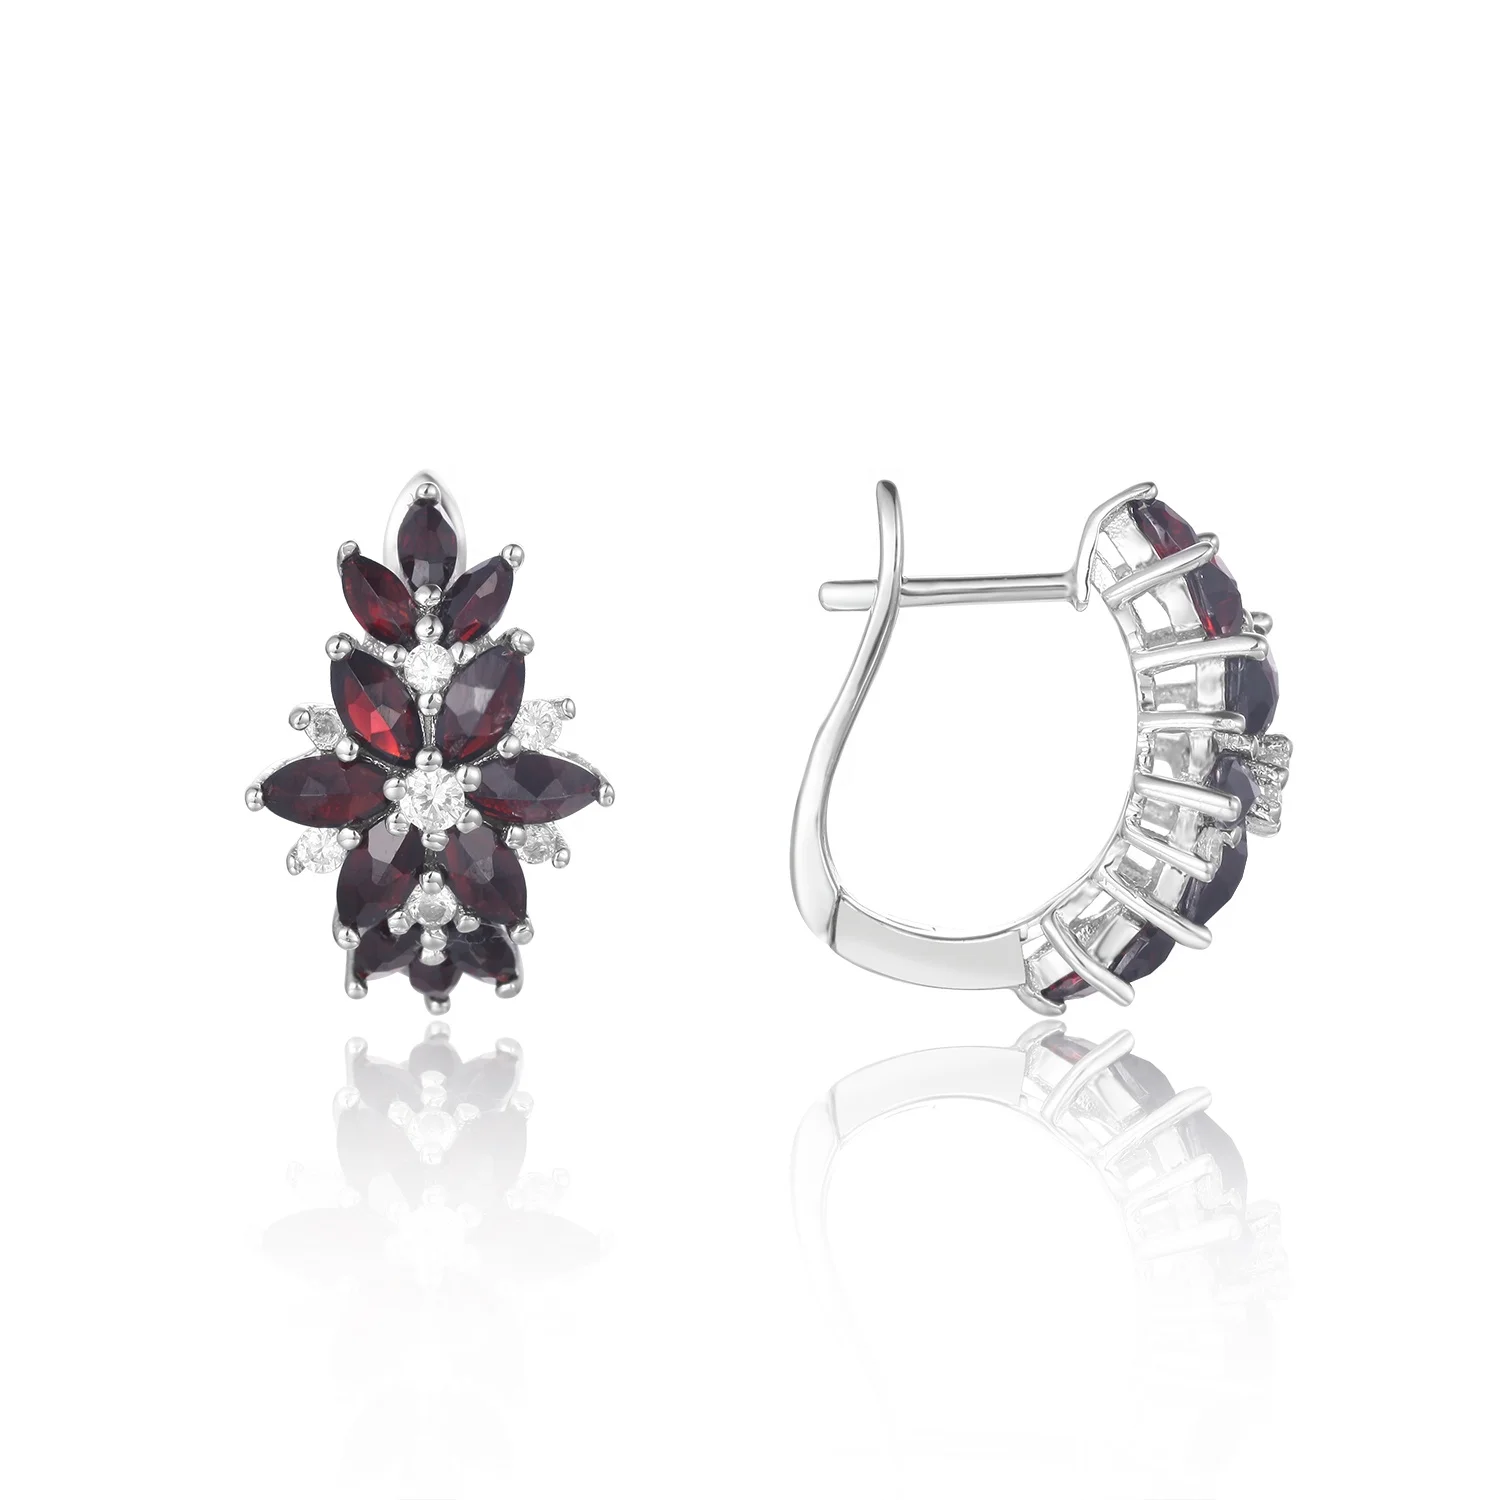 

Abiding Fashion Flower Earrings Natural Black Garnet Gemstone 925 Sterling Silver Wholesale Earring Clip On Jewelry Women